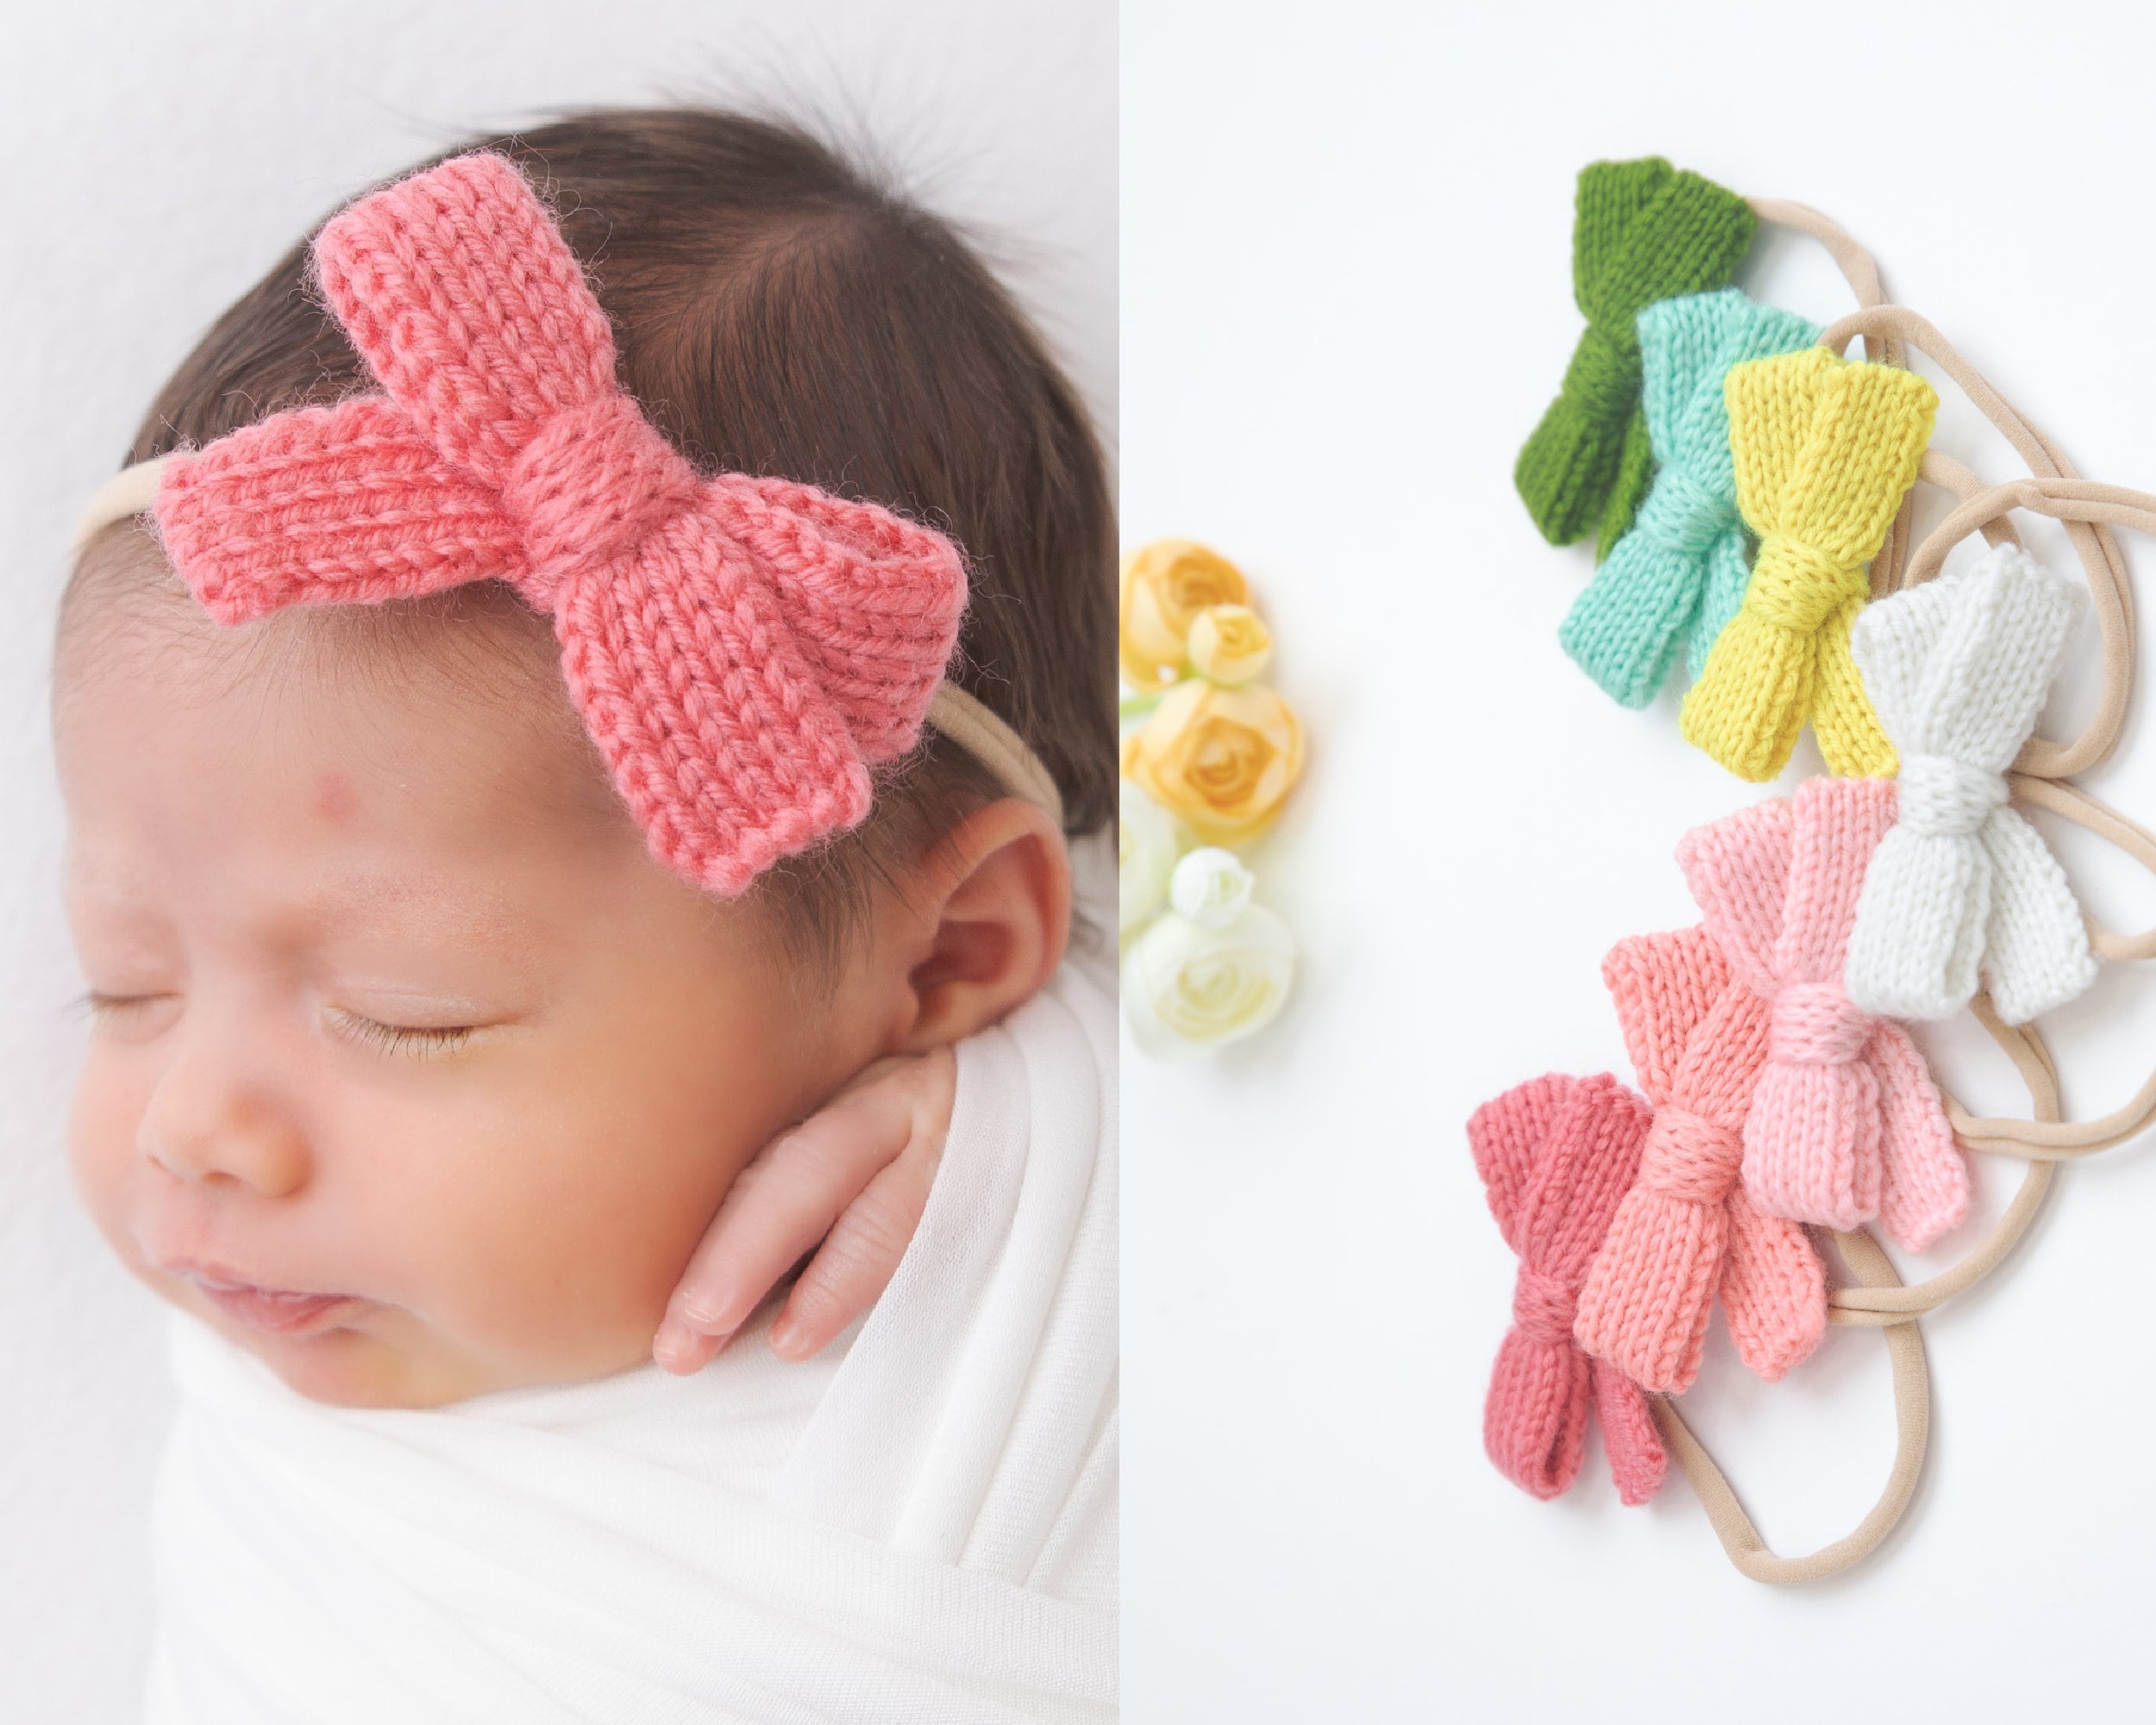 3 uds. Diademas con estilo de donut para bebé, cintas para el pelo, lazos  elásticos para bebés, niñas recién nacidas, niños pequeños